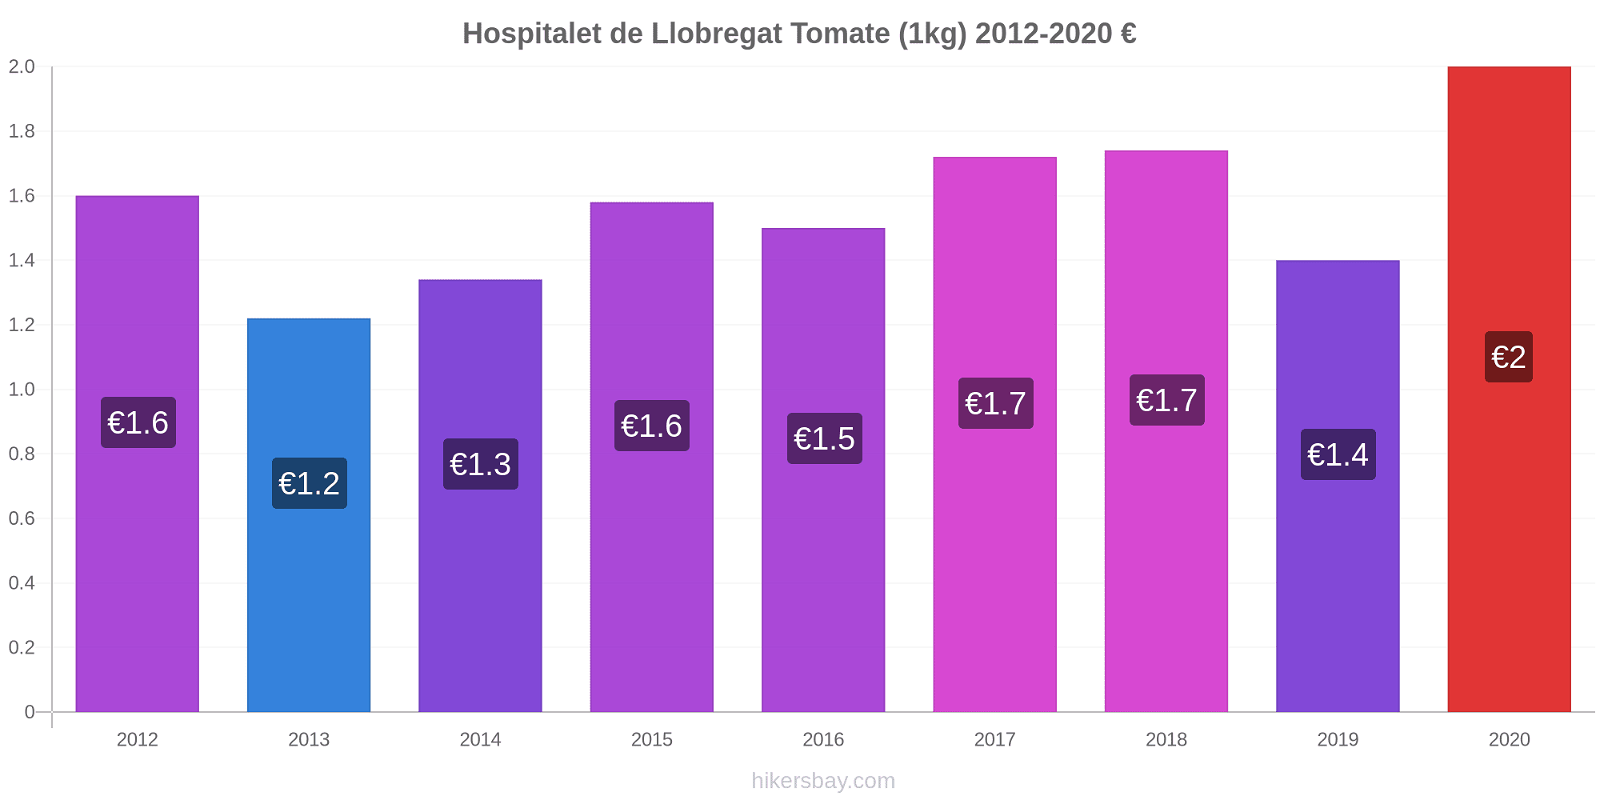 Hospitalet de Llobregat cambios de precios Tomate (1kg) hikersbay.com